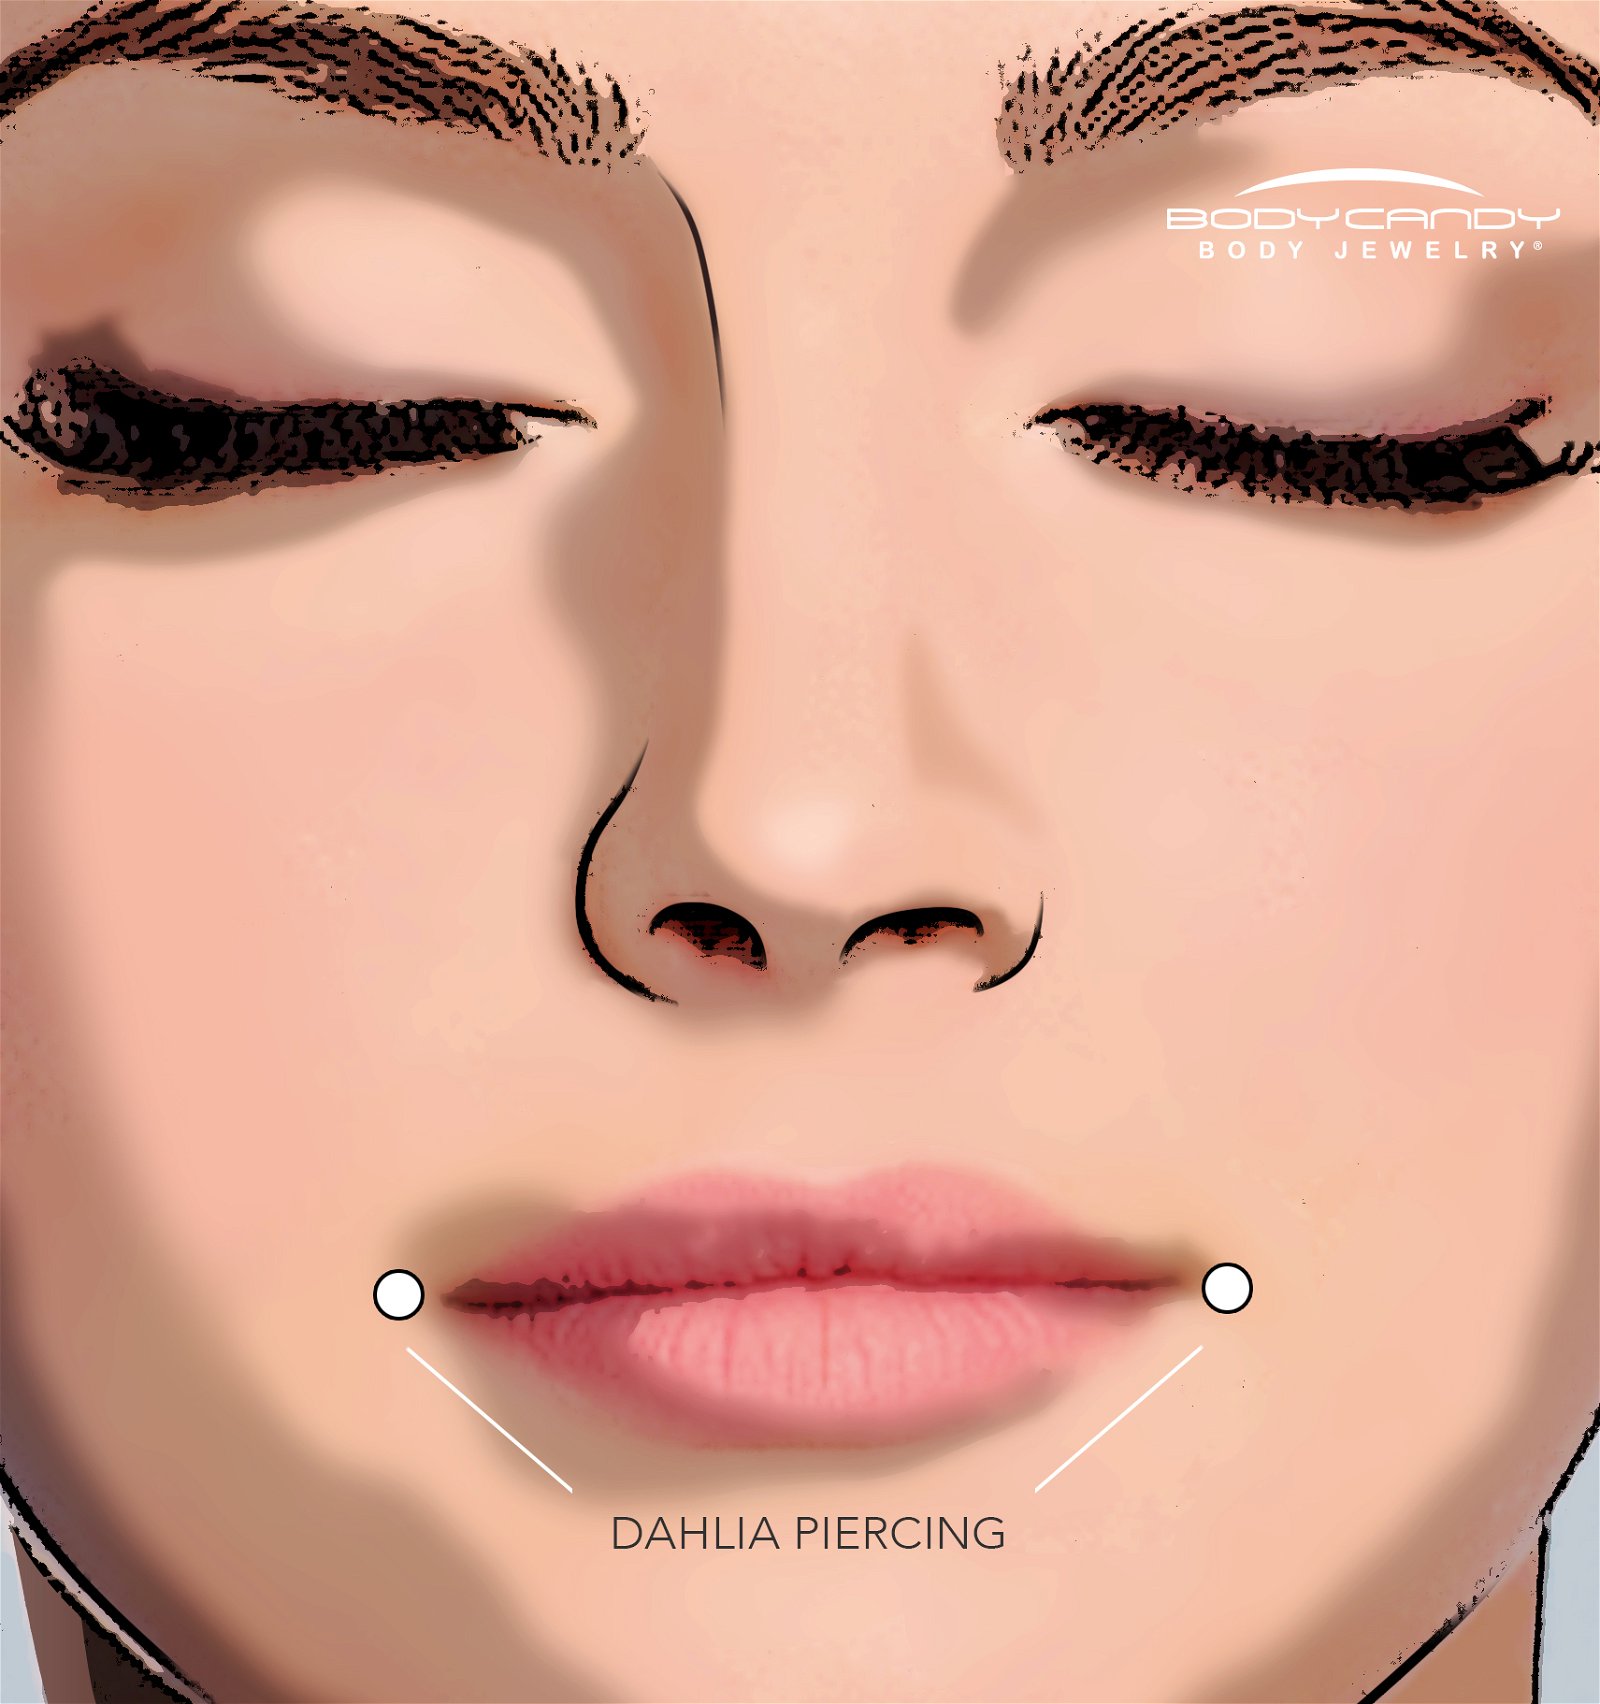 What is a dahlia (aka joker) piercing?